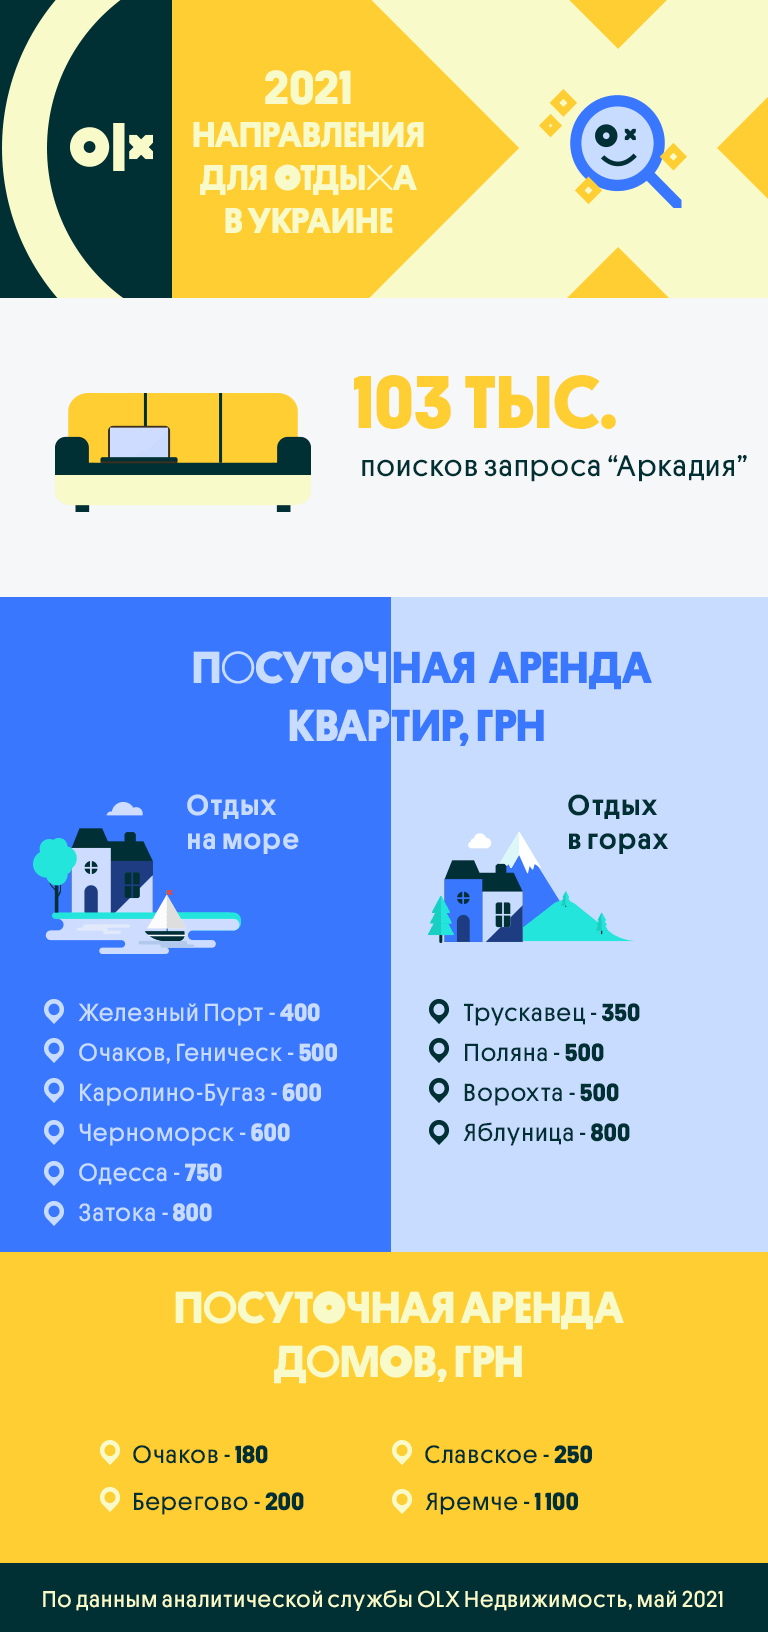 Закарпатье, Одесская и Запорожская области: самые популярные направления для отдыха в 2021 году среди украинцев